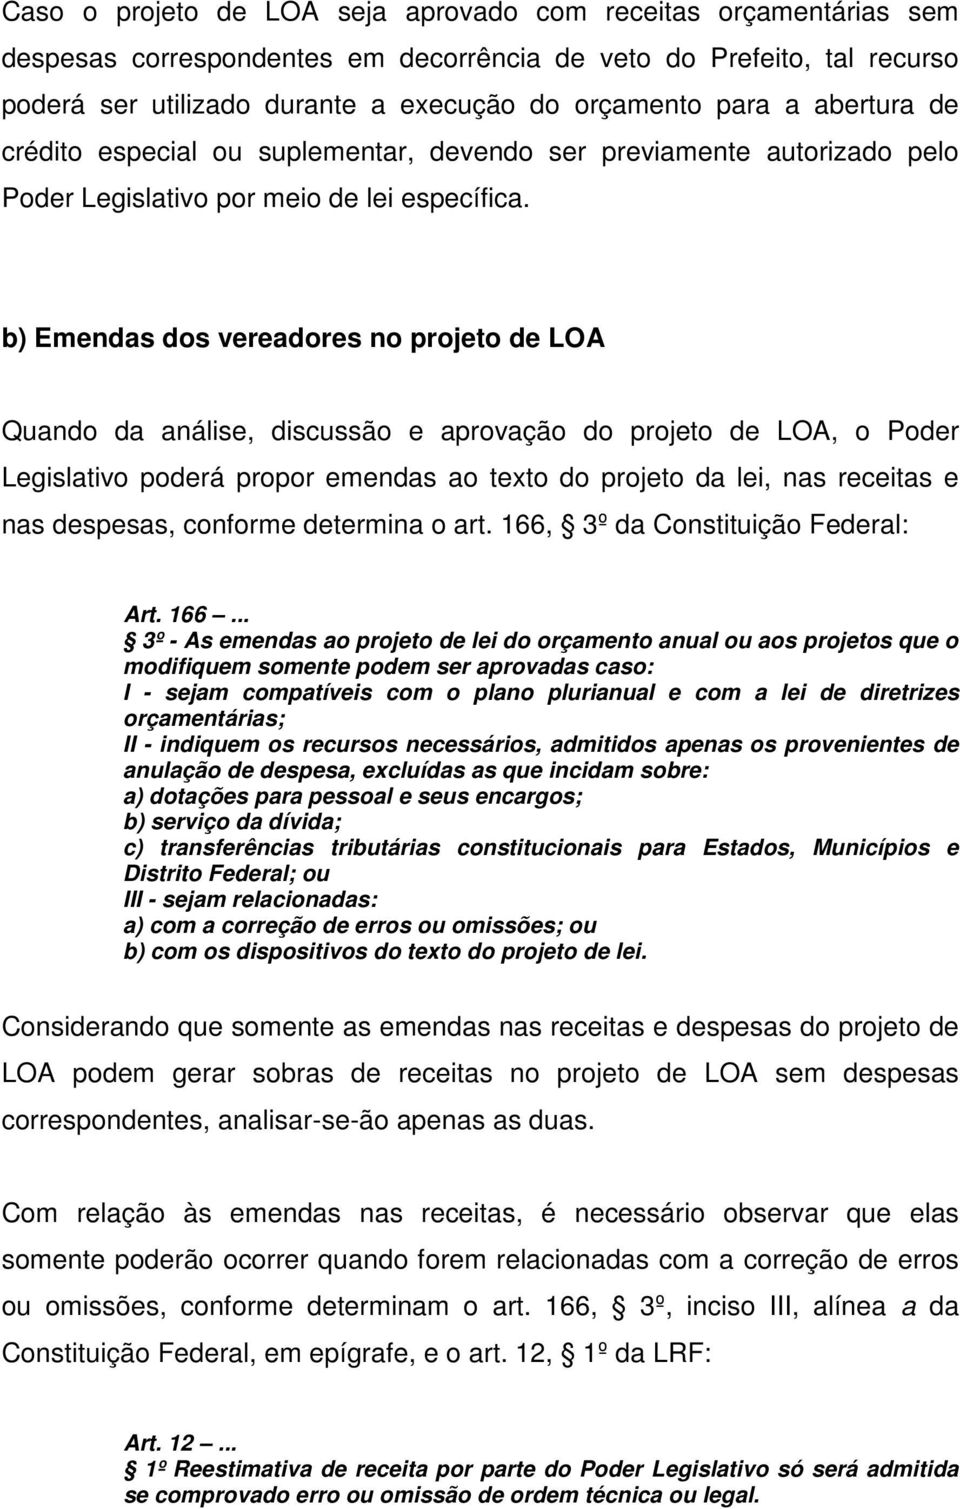 b) Emendas dos vereadores no projeto de LOA Quando da análise, discussão e aprovação do projeto de LOA, o Poder Legislativo poderá propor emendas ao texto do projeto da lei, nas receitas e nas